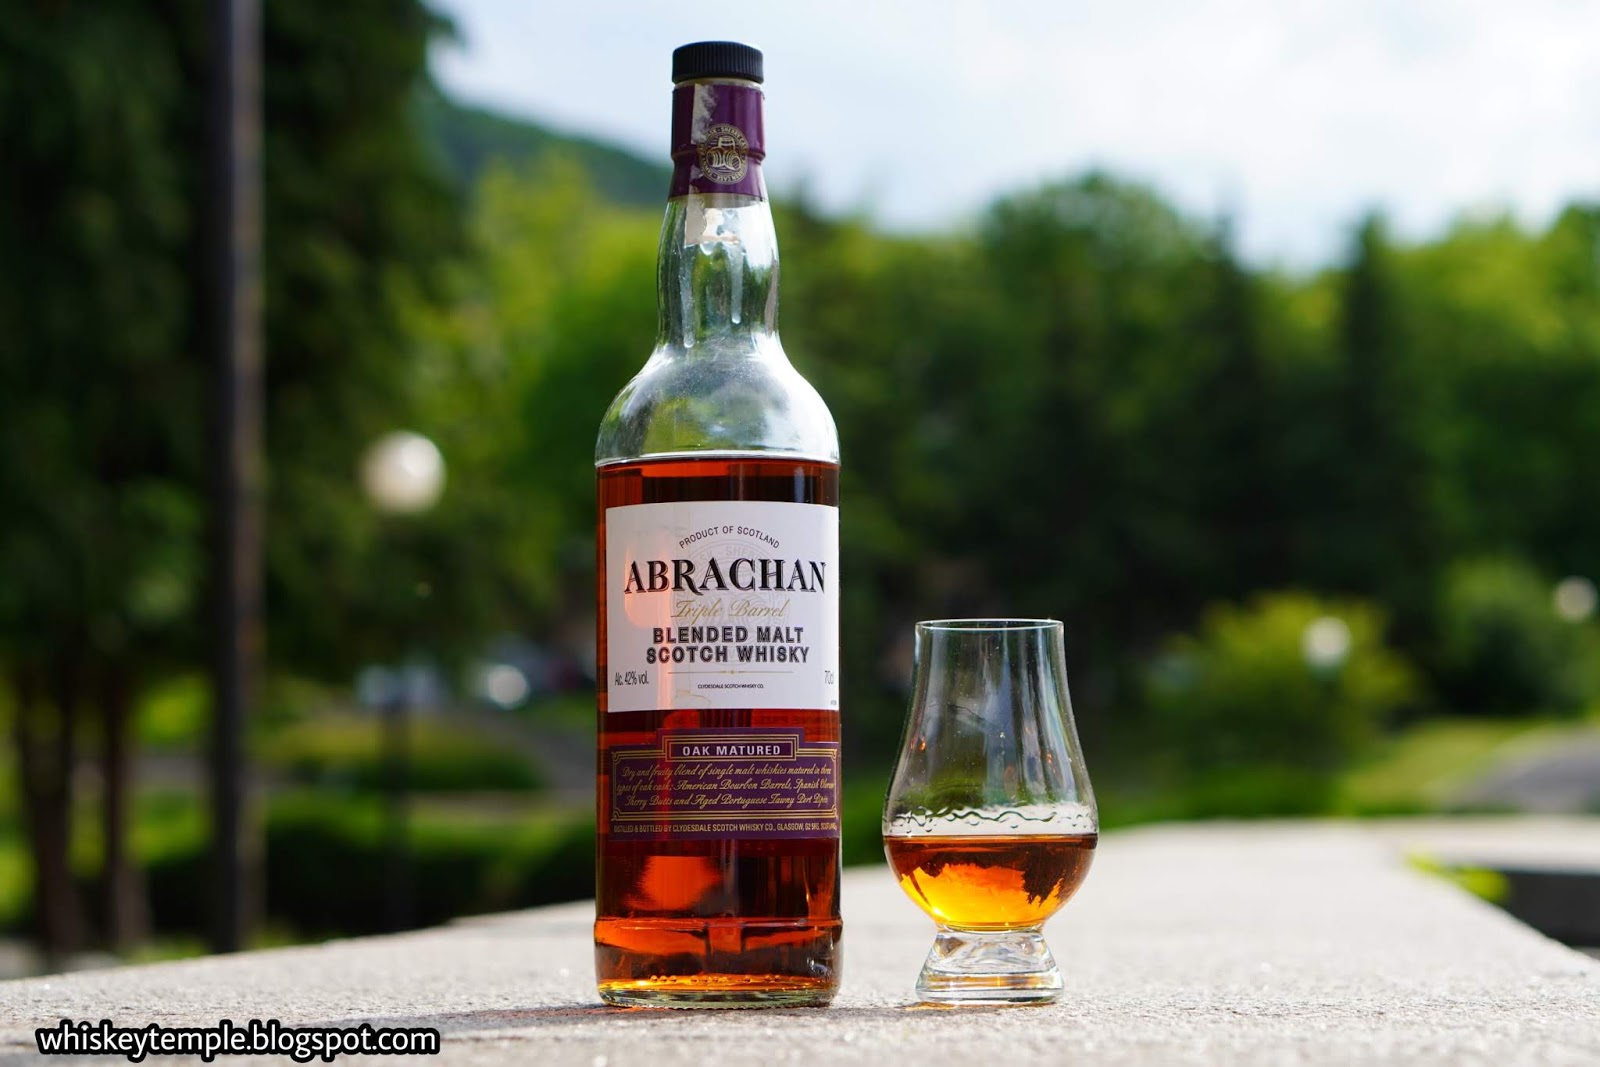 Whiskeytemple whisky – blended barrel Triple Abrachan malt